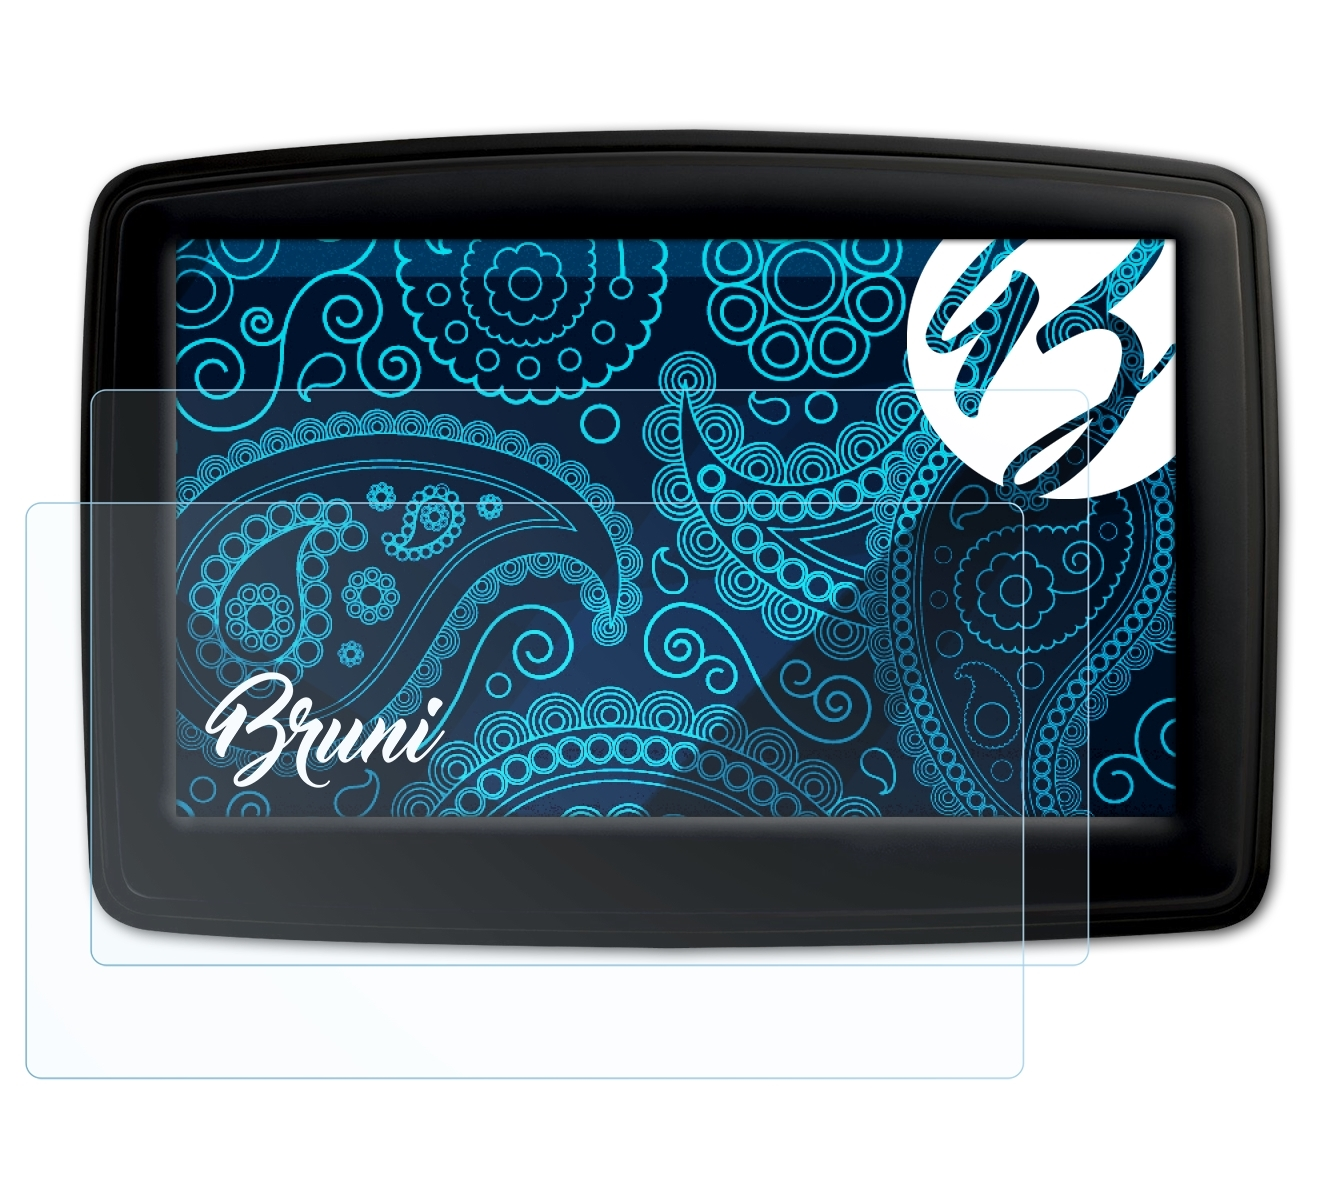 BRUNI 2x Basics-Clear Schutzfolie(für XL TomTom Europe) IQ Routes